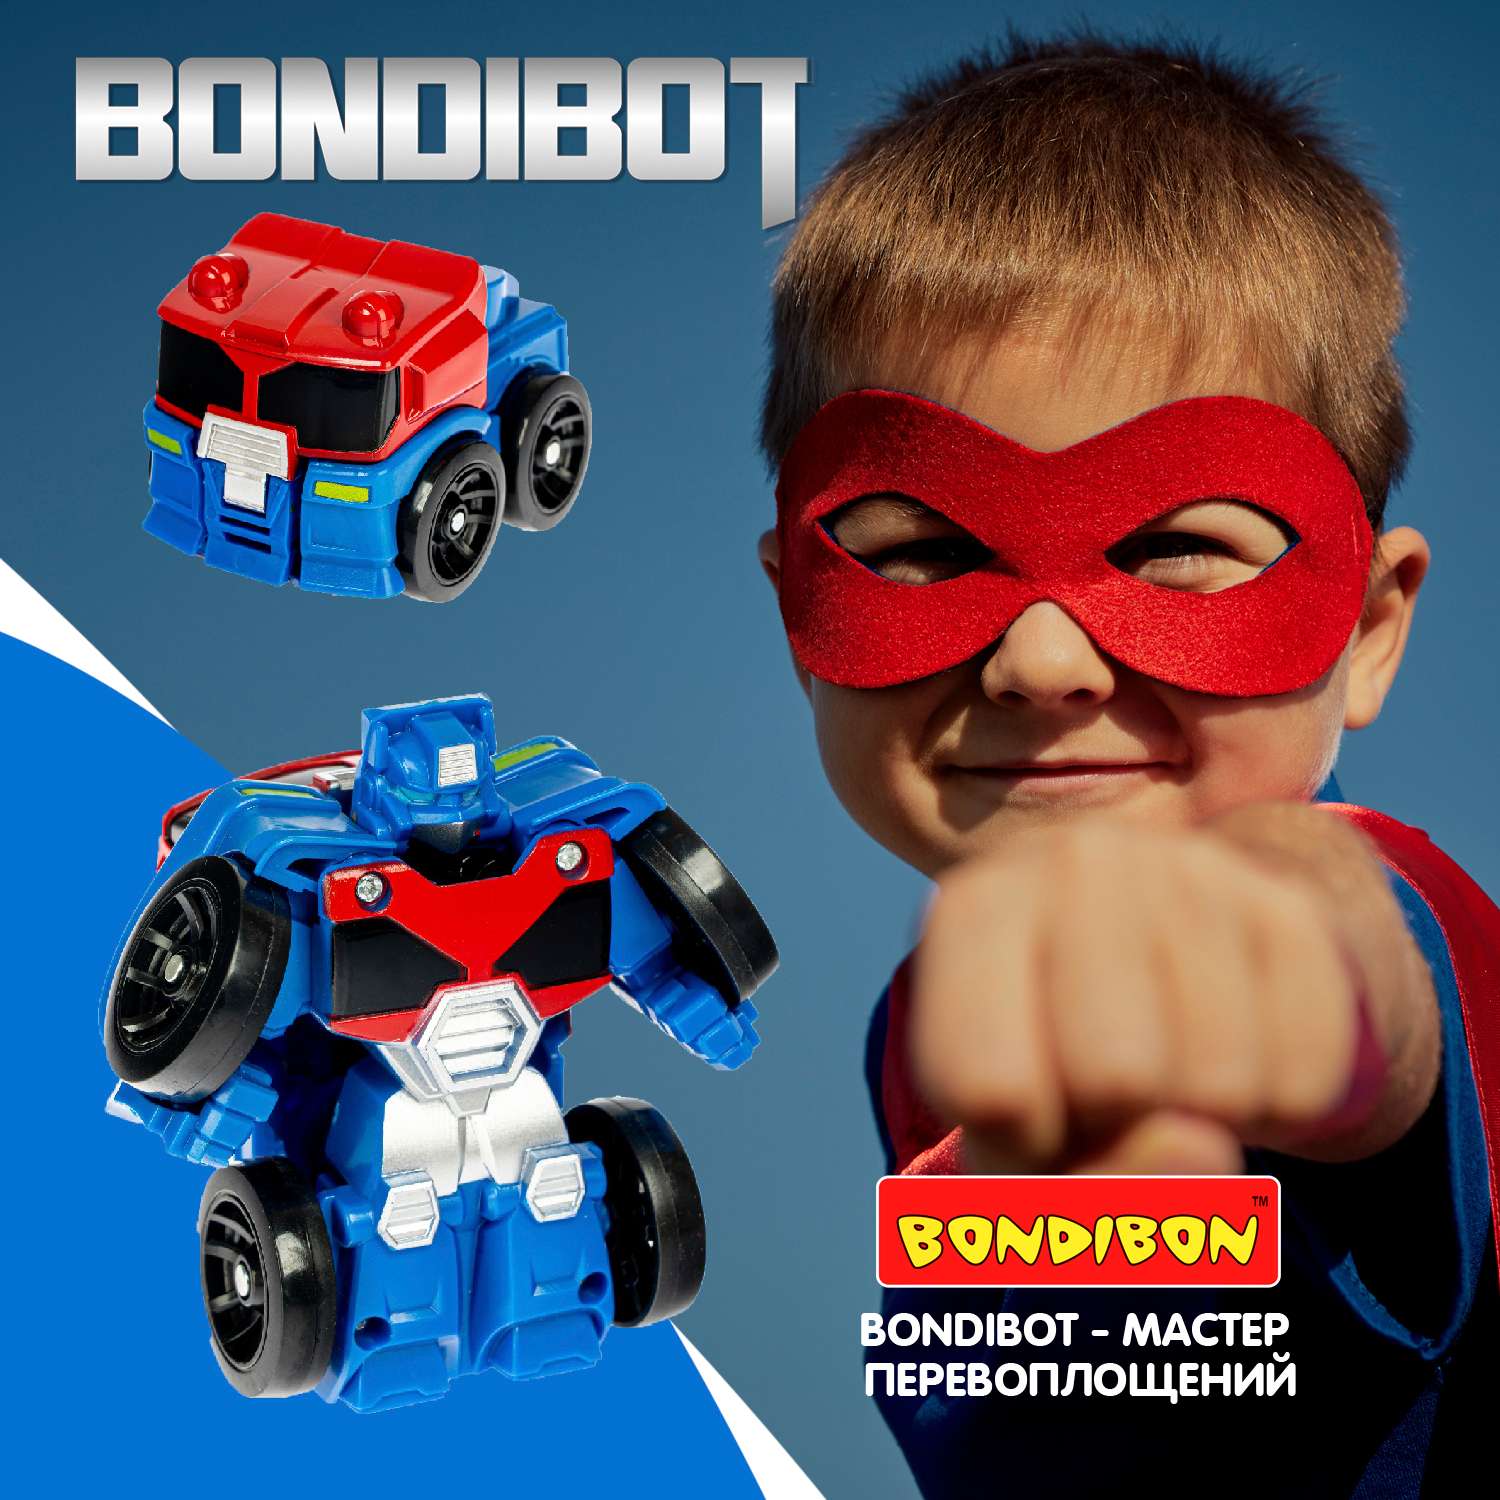 Трансформер BONDIBON BONDIBOT 2 в 1 робот-машинка исследователь сине-красного цвета - фото 11